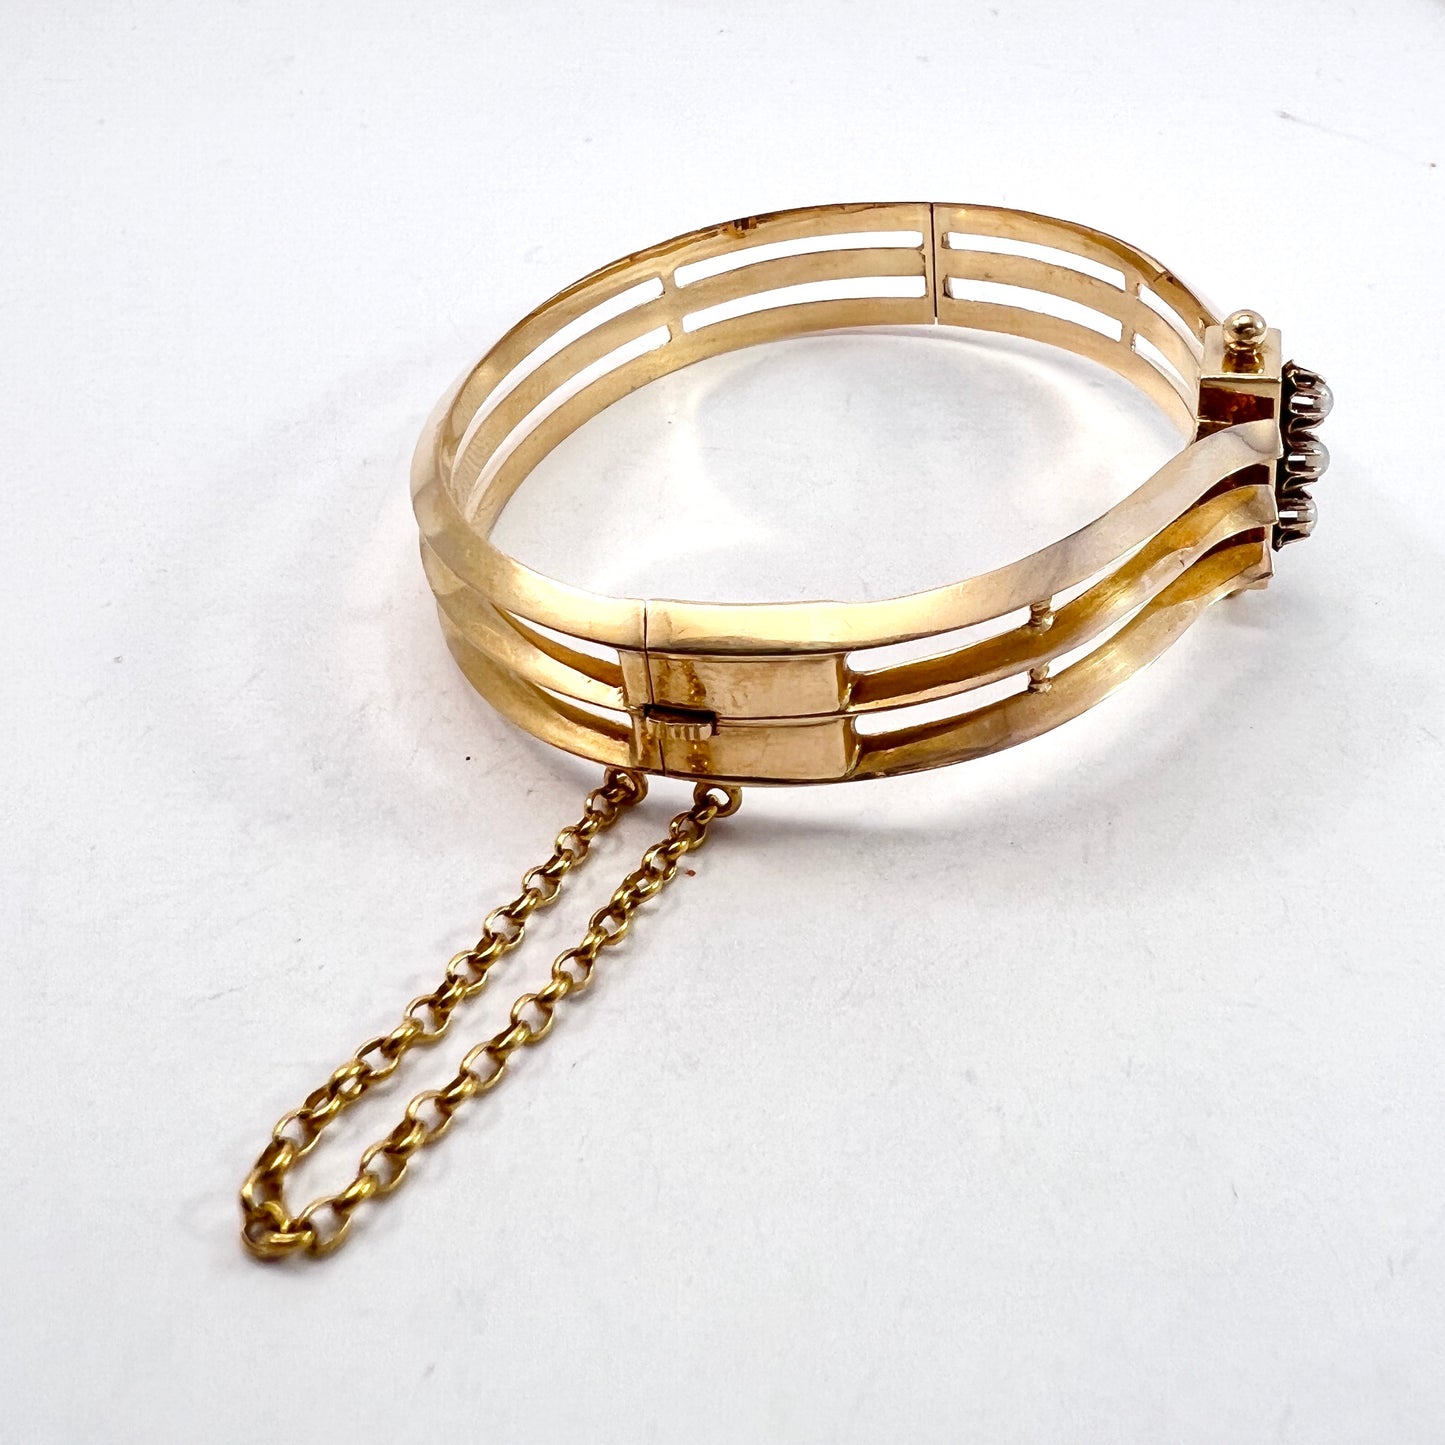 L Larsson, Sweden 1888. Antique Victorian 18k Gold Pearl Hinged Bangle Bracelet. 19.5gram